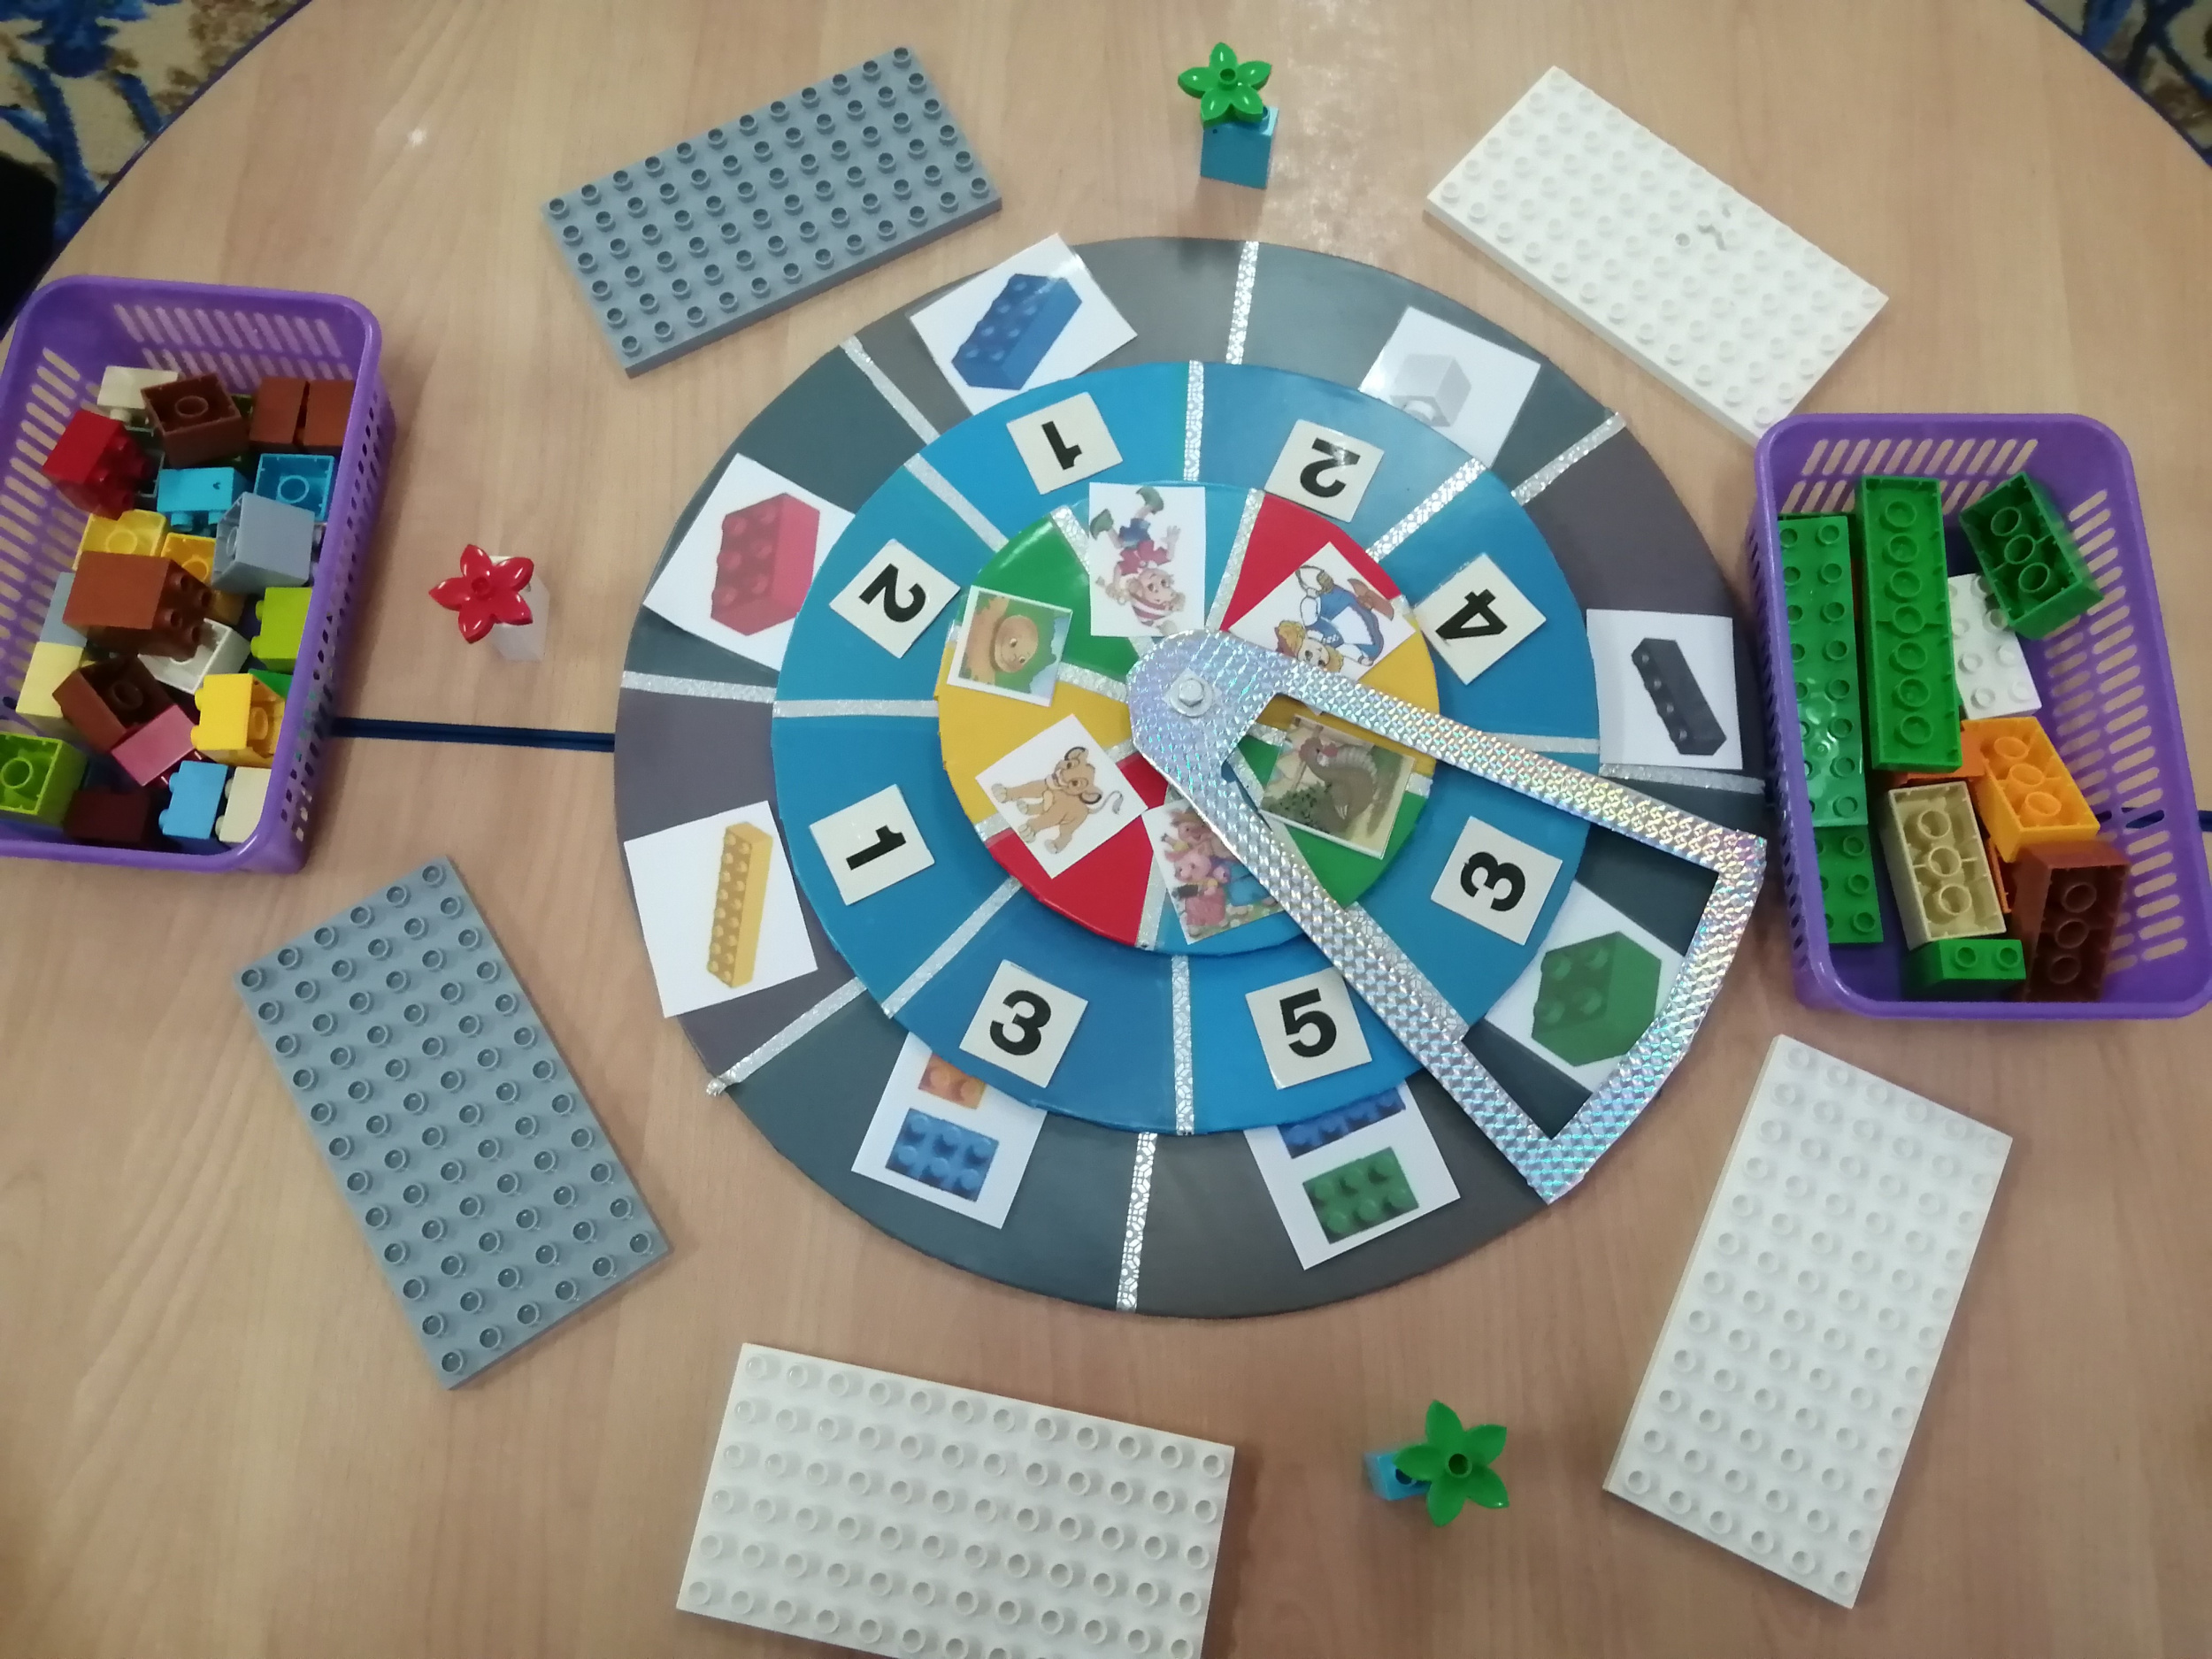 Игры по LEGO-конструированию с использованием пособия технологии ТРИЗ